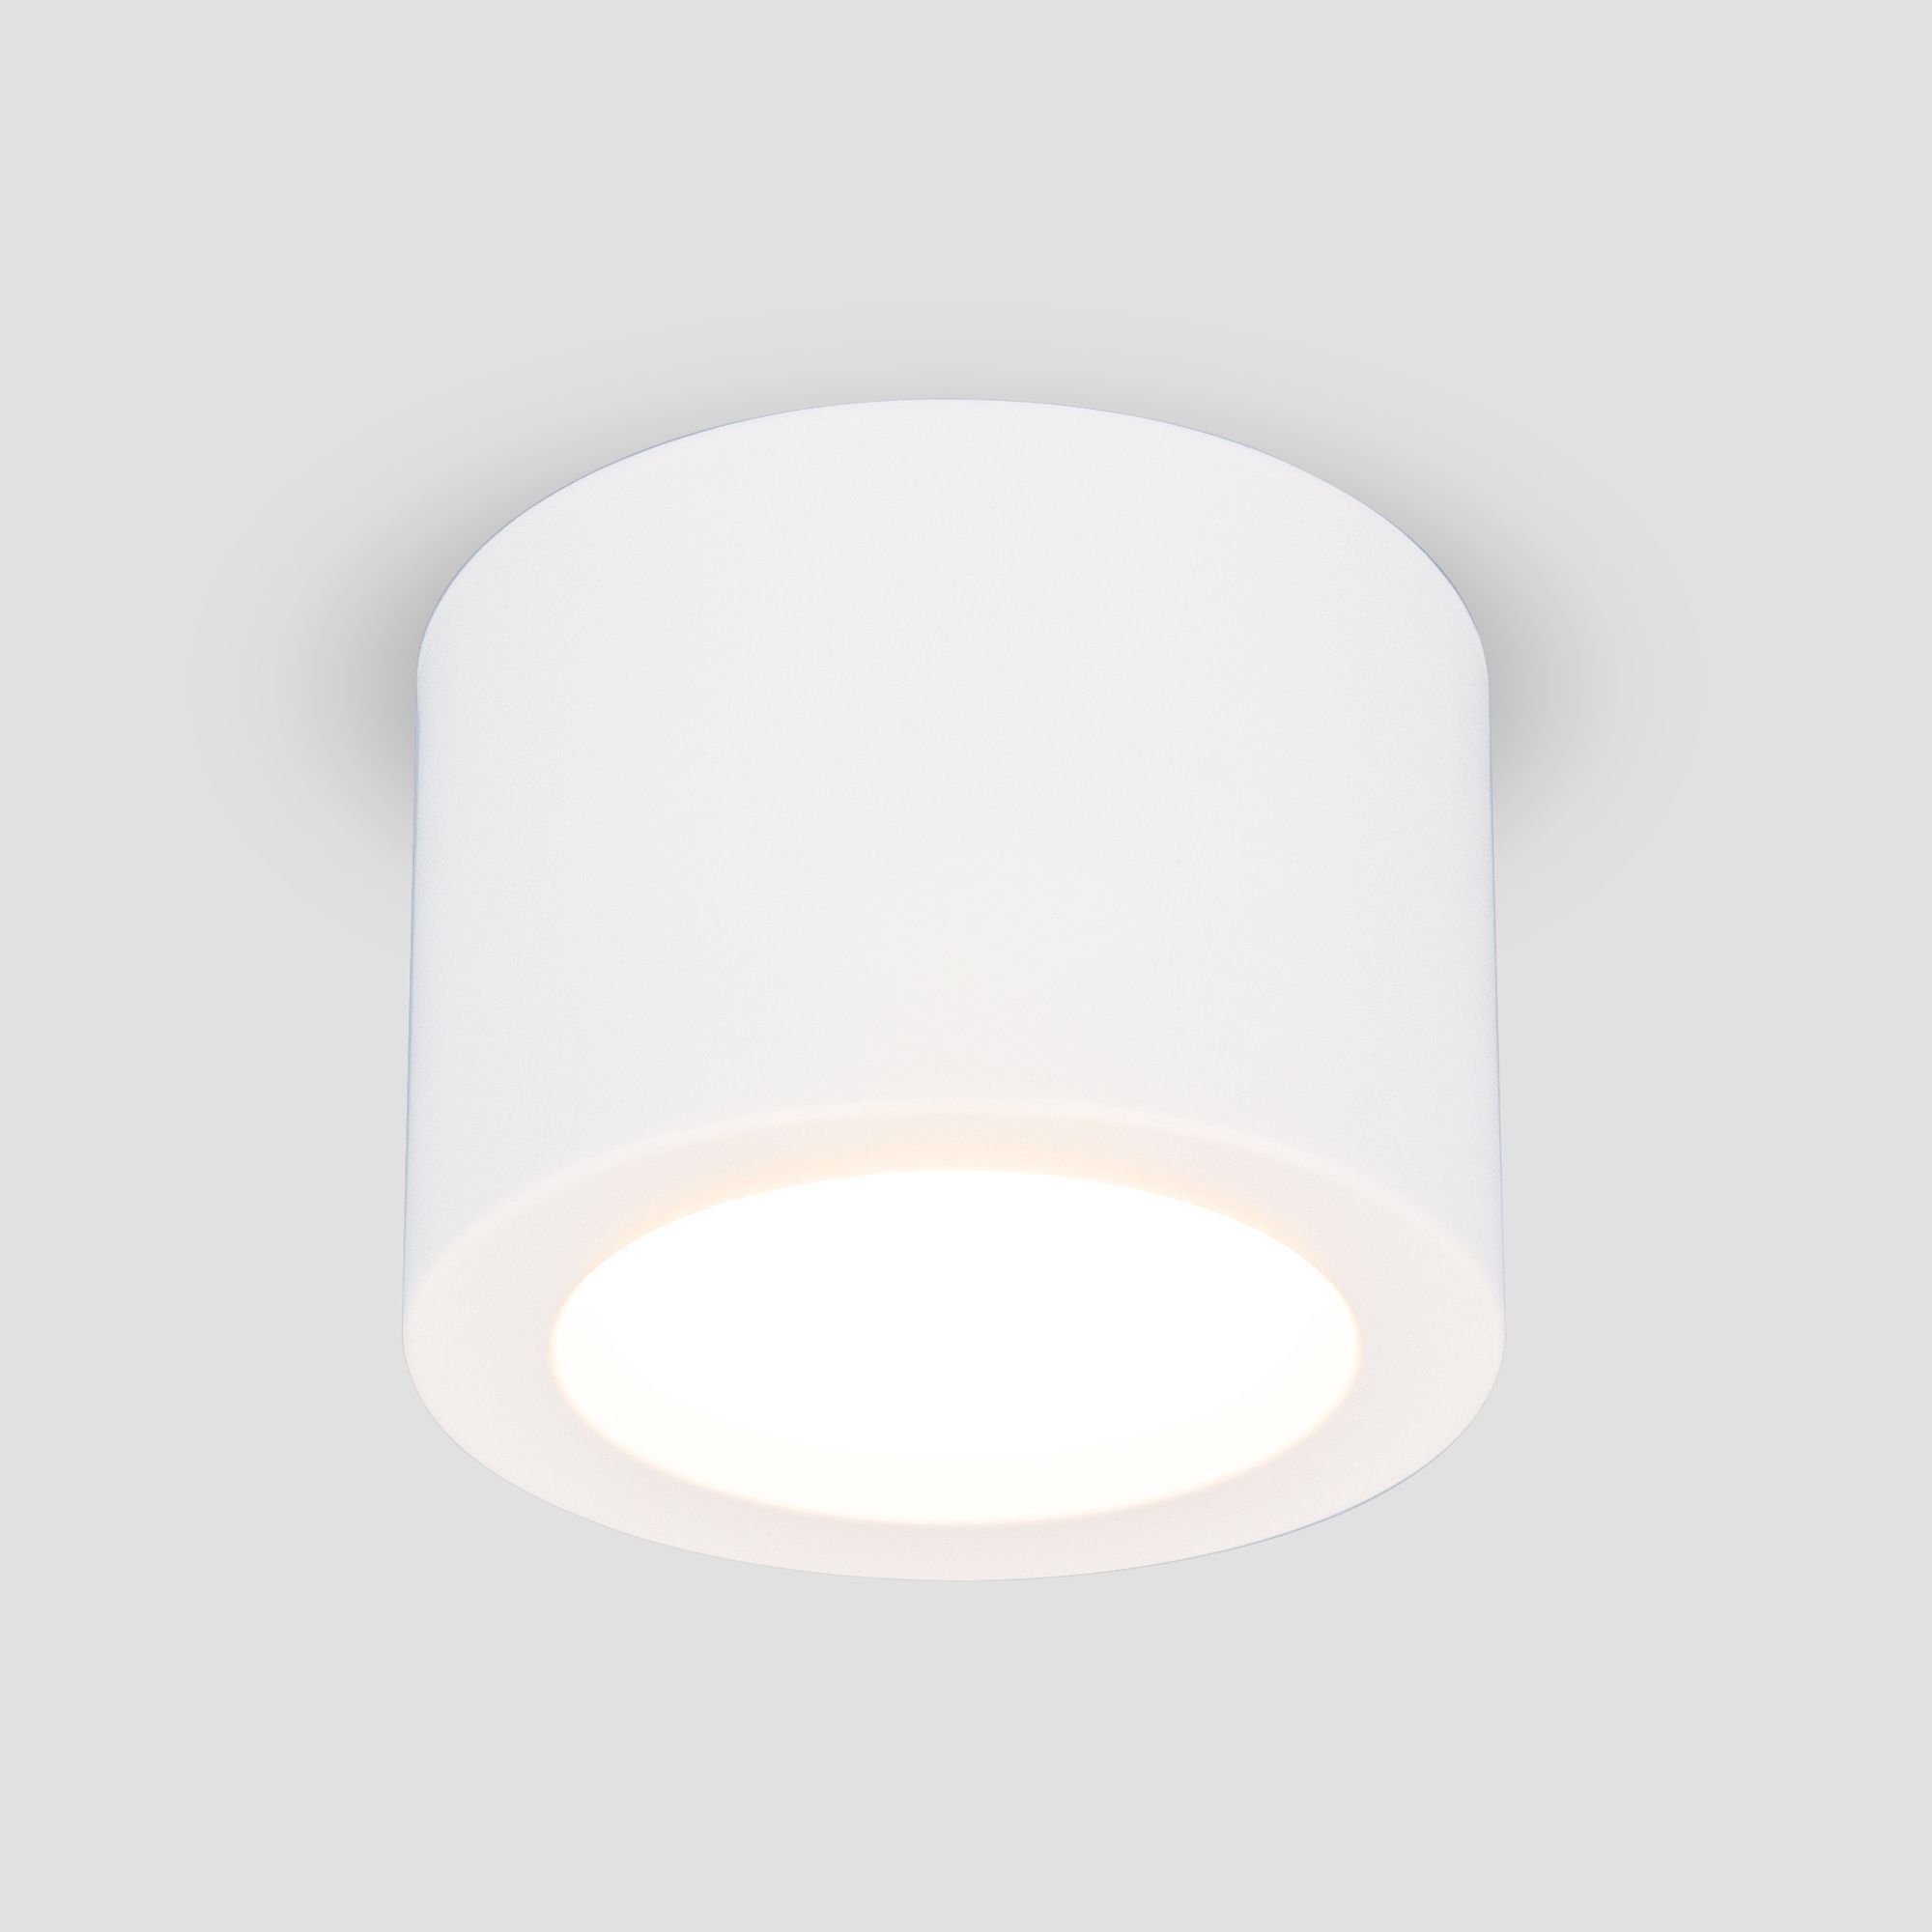 Накладной потолочный  светодиодный светильник DLR026 6W 4200K белый матовый. Фото 1